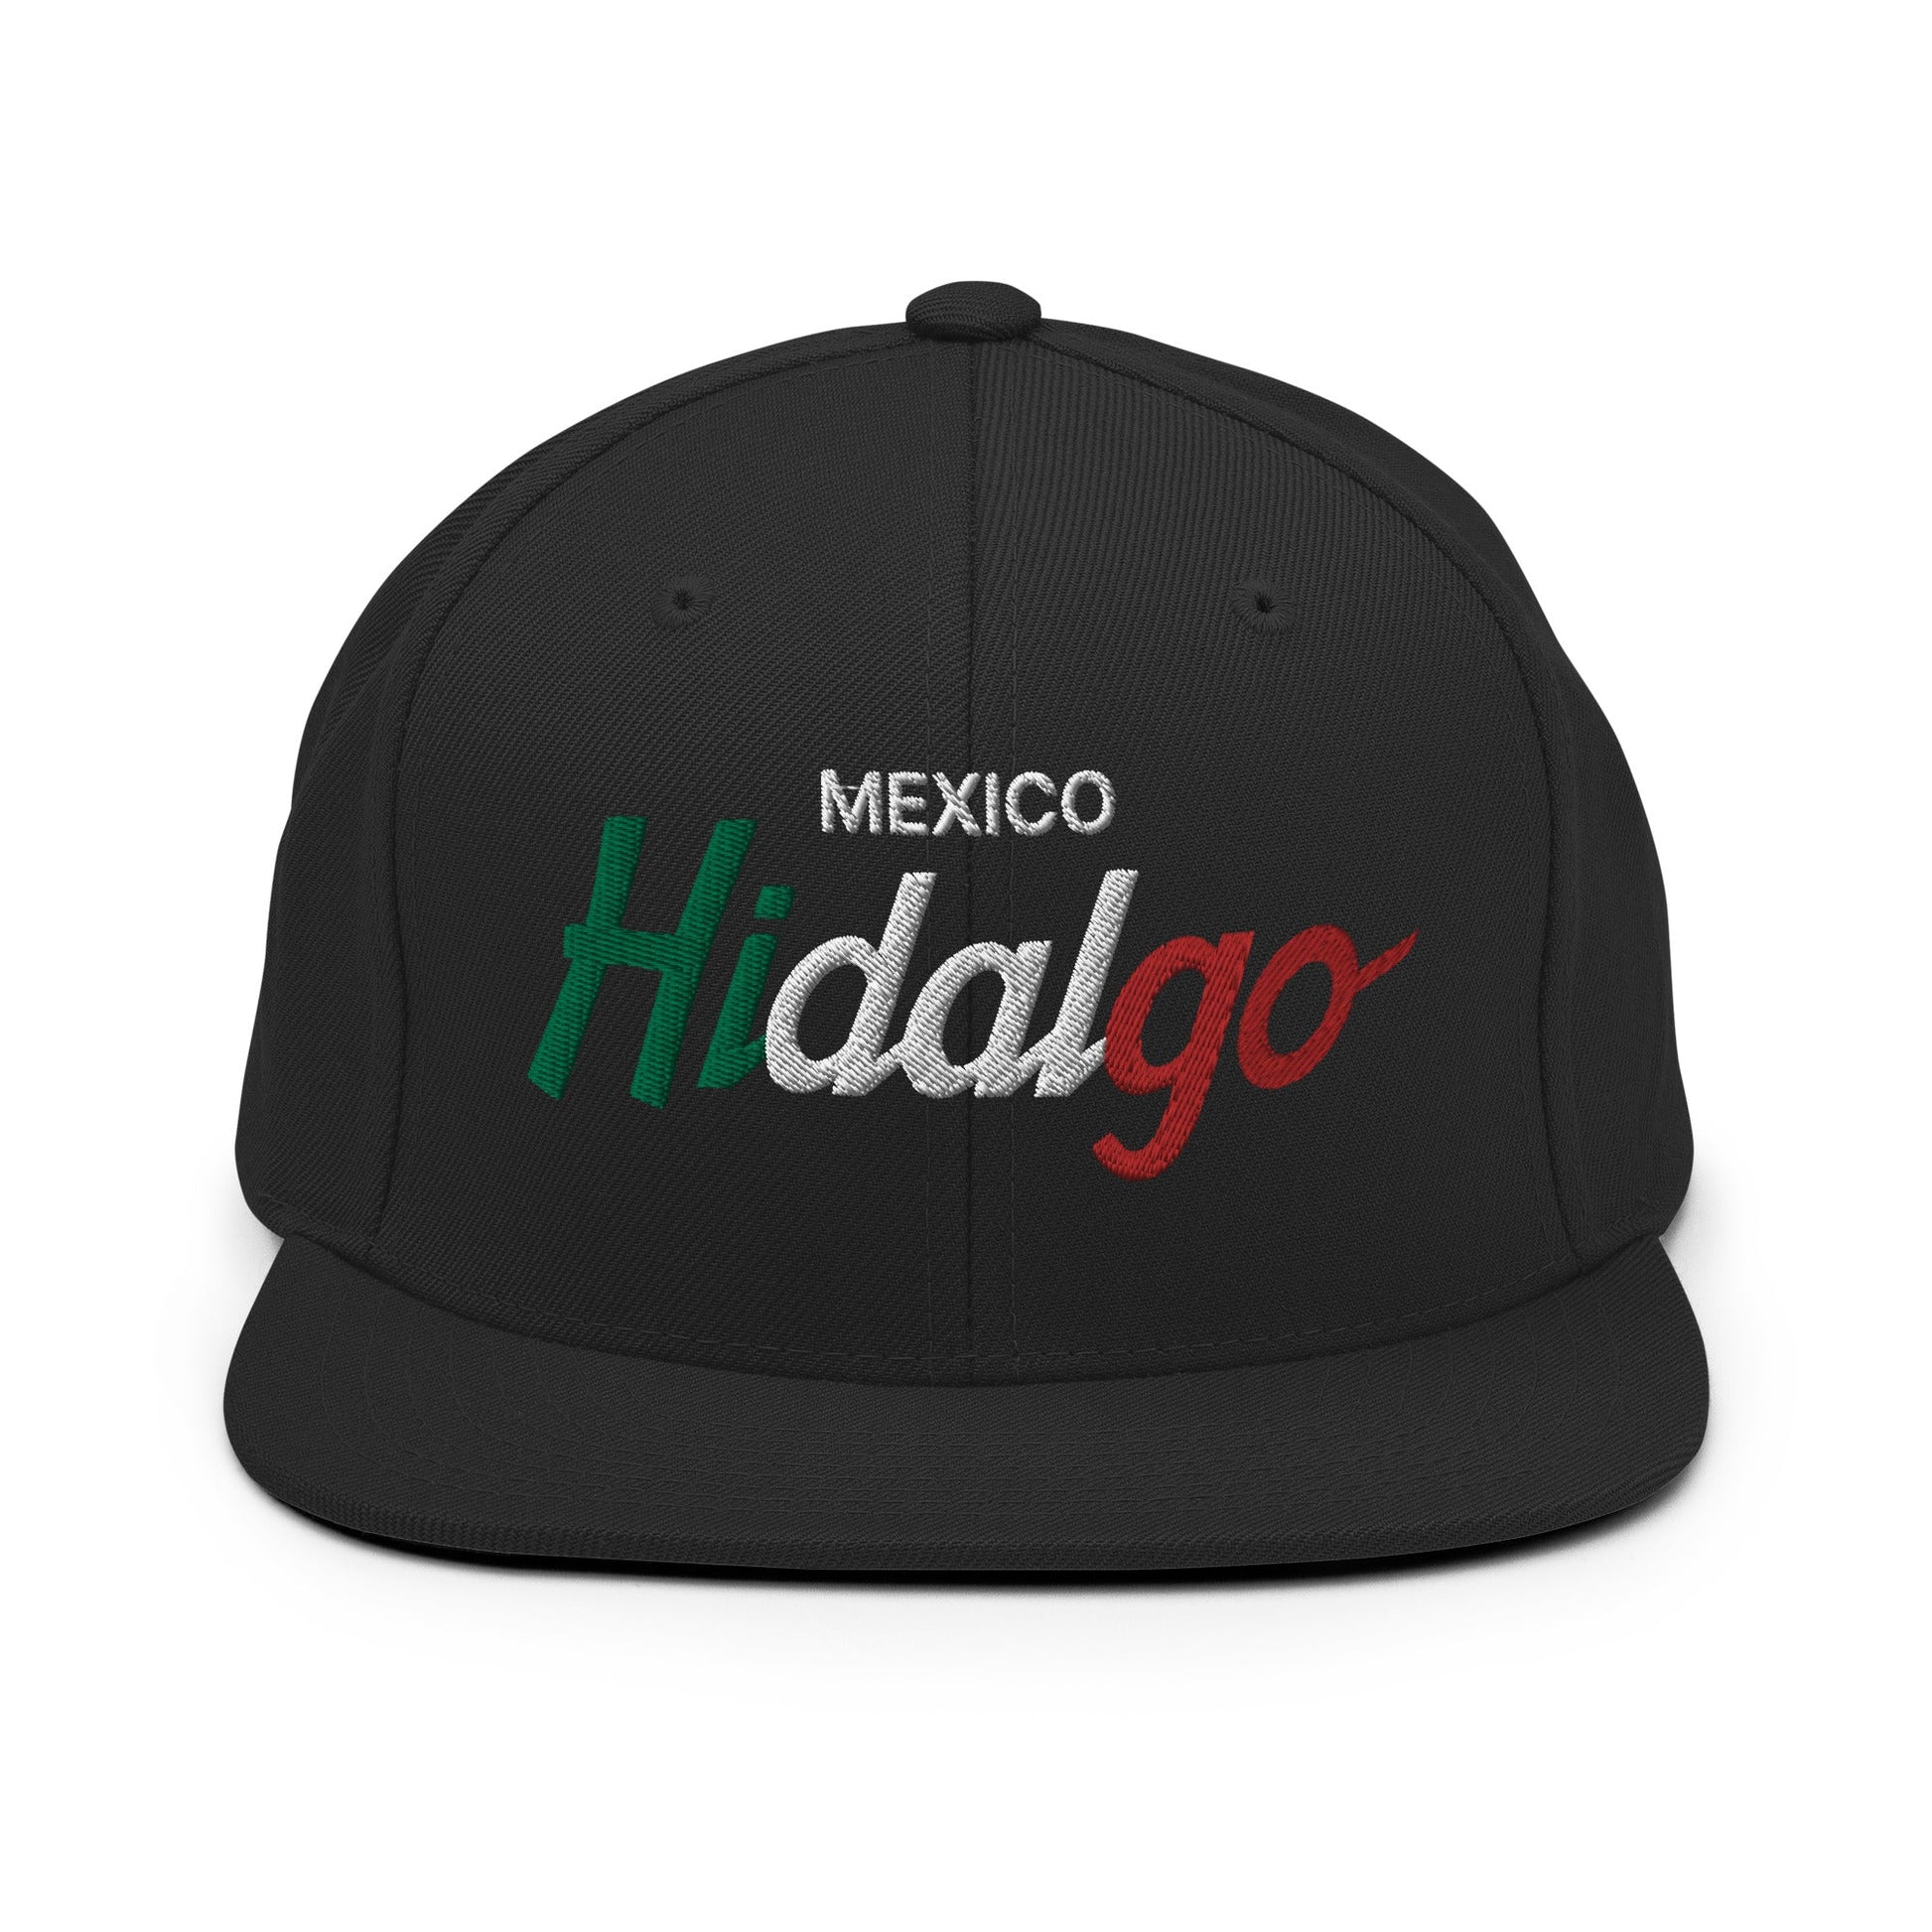 Hidalgo Mexico Vintage Sports Script Snapback Hat Black